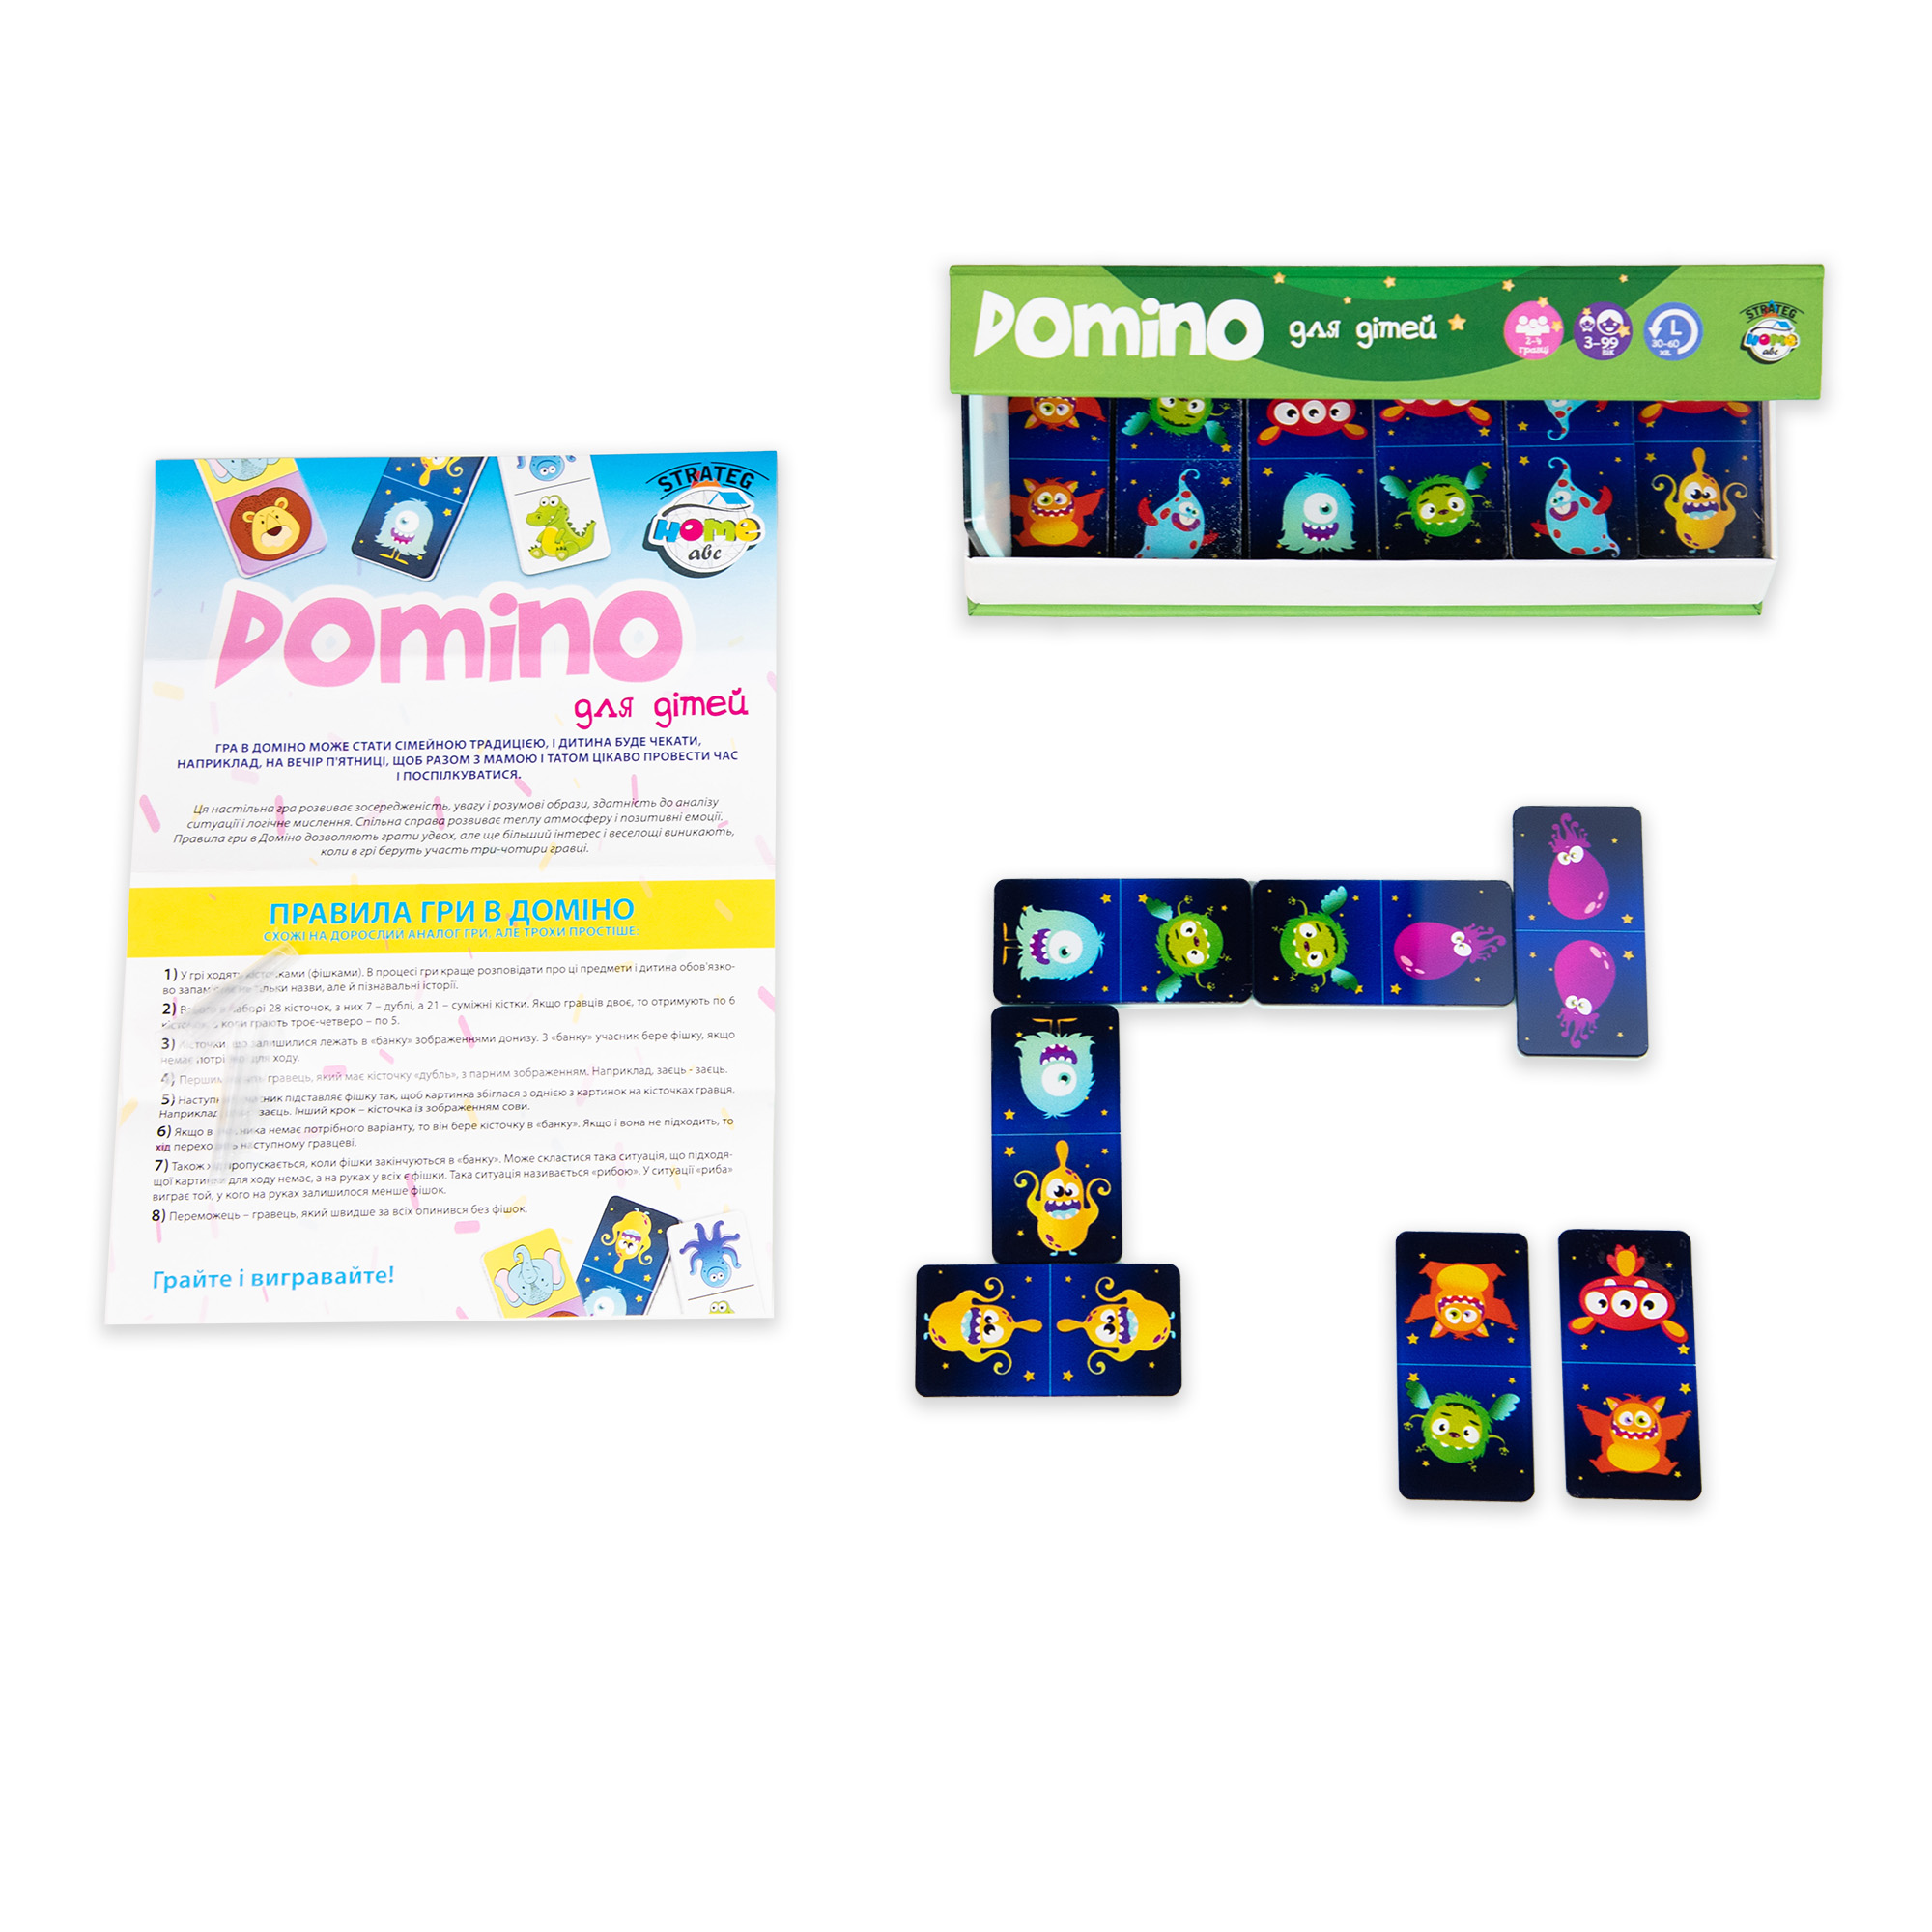 Brettspiel Strateg Domino Monster in limitierter Auflage auf Ukrainisch (30736)